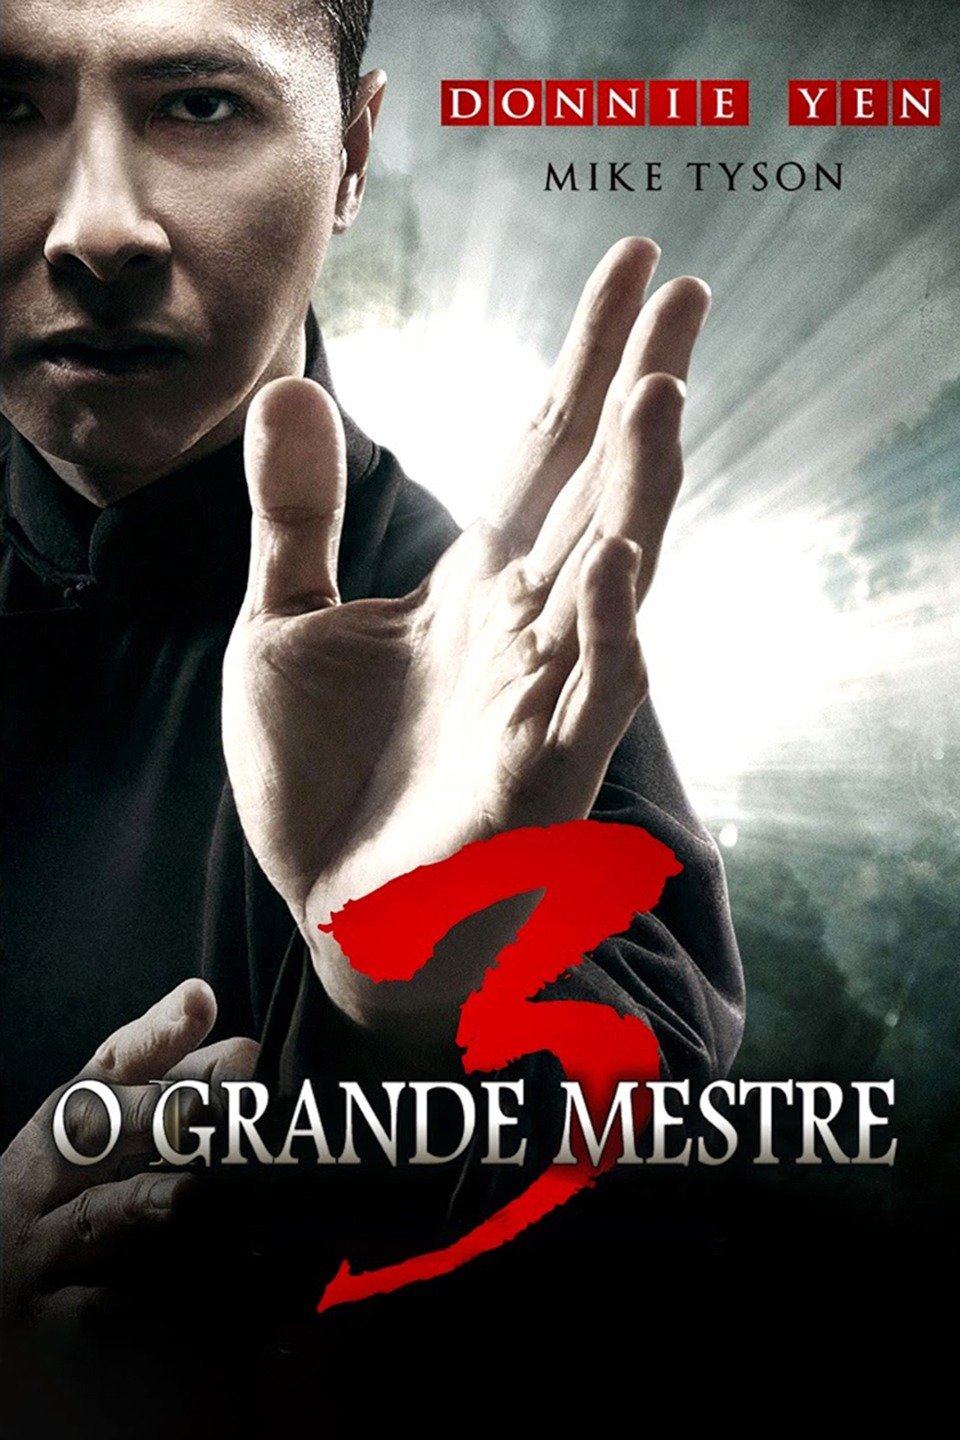 O Grande Mestre (Filme), Trailer, Sinopse e Curiosidades - Cinema10